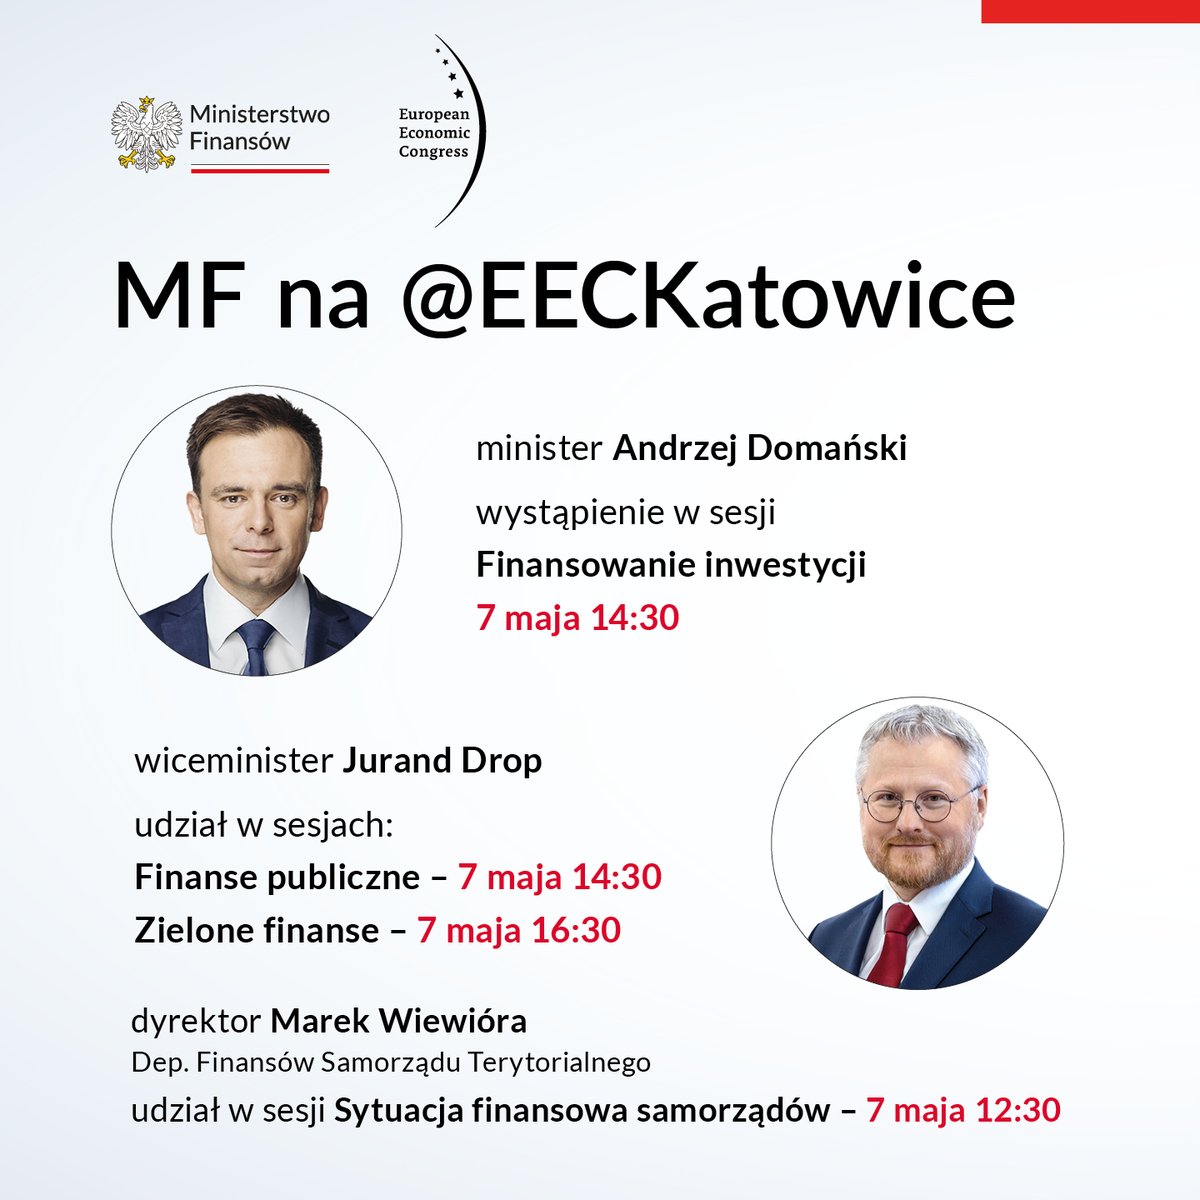 Dziś zaczął się XVI Europejski Kongres Gospodarczy @EECKatowice – forum debaty o przyszłości europejskiej oraz polskiej gospodarki. Polecamy uwadze sesje z udziałem kierownictwa i przedstawicieli #MF.